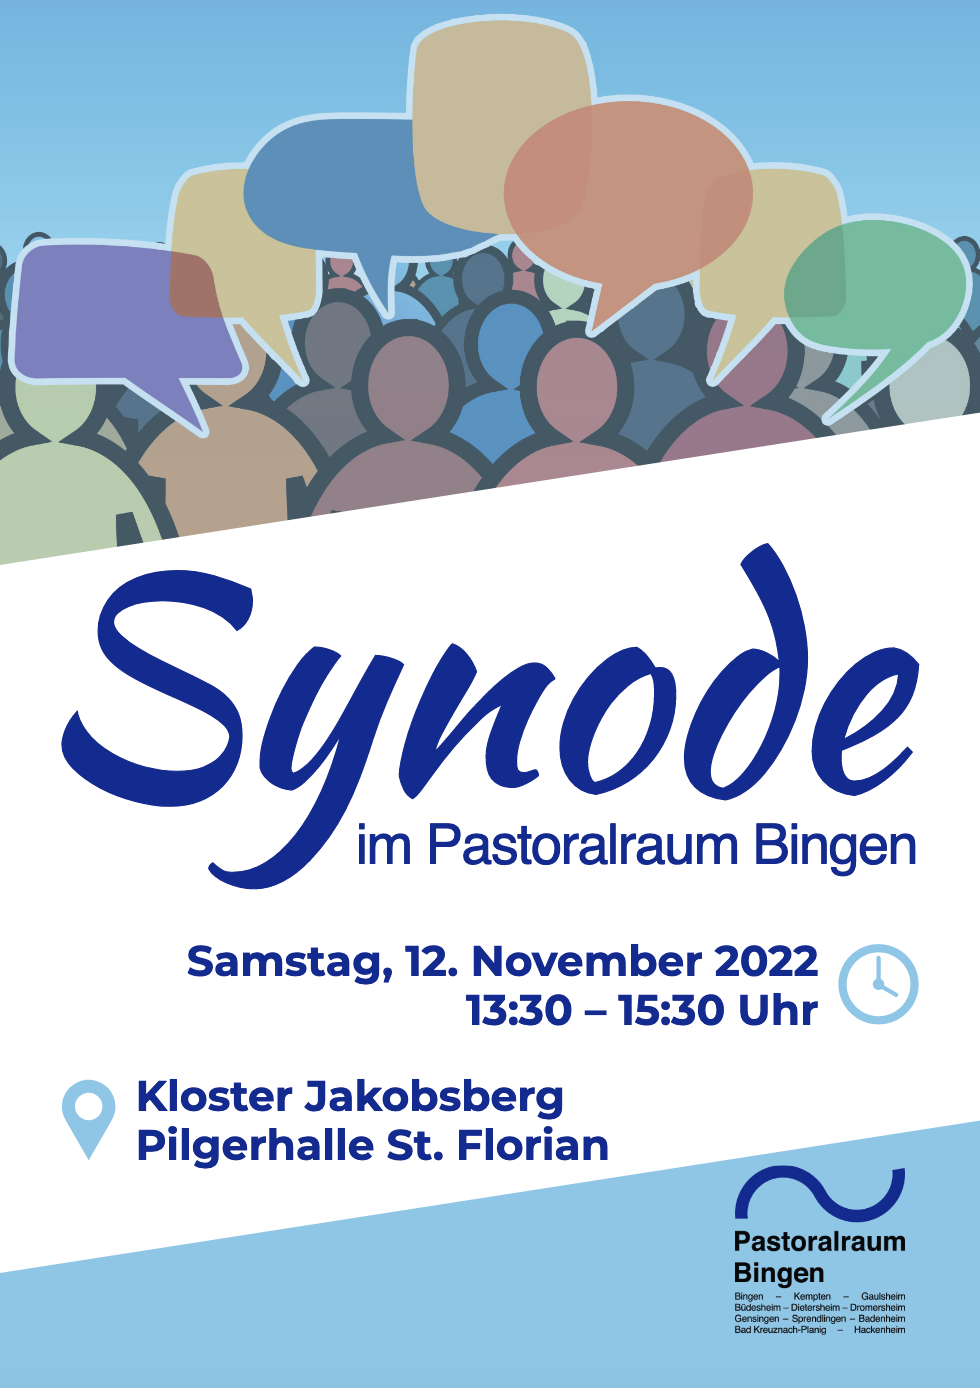 Synode PR Bingen (c) Pastoralraum Bingen